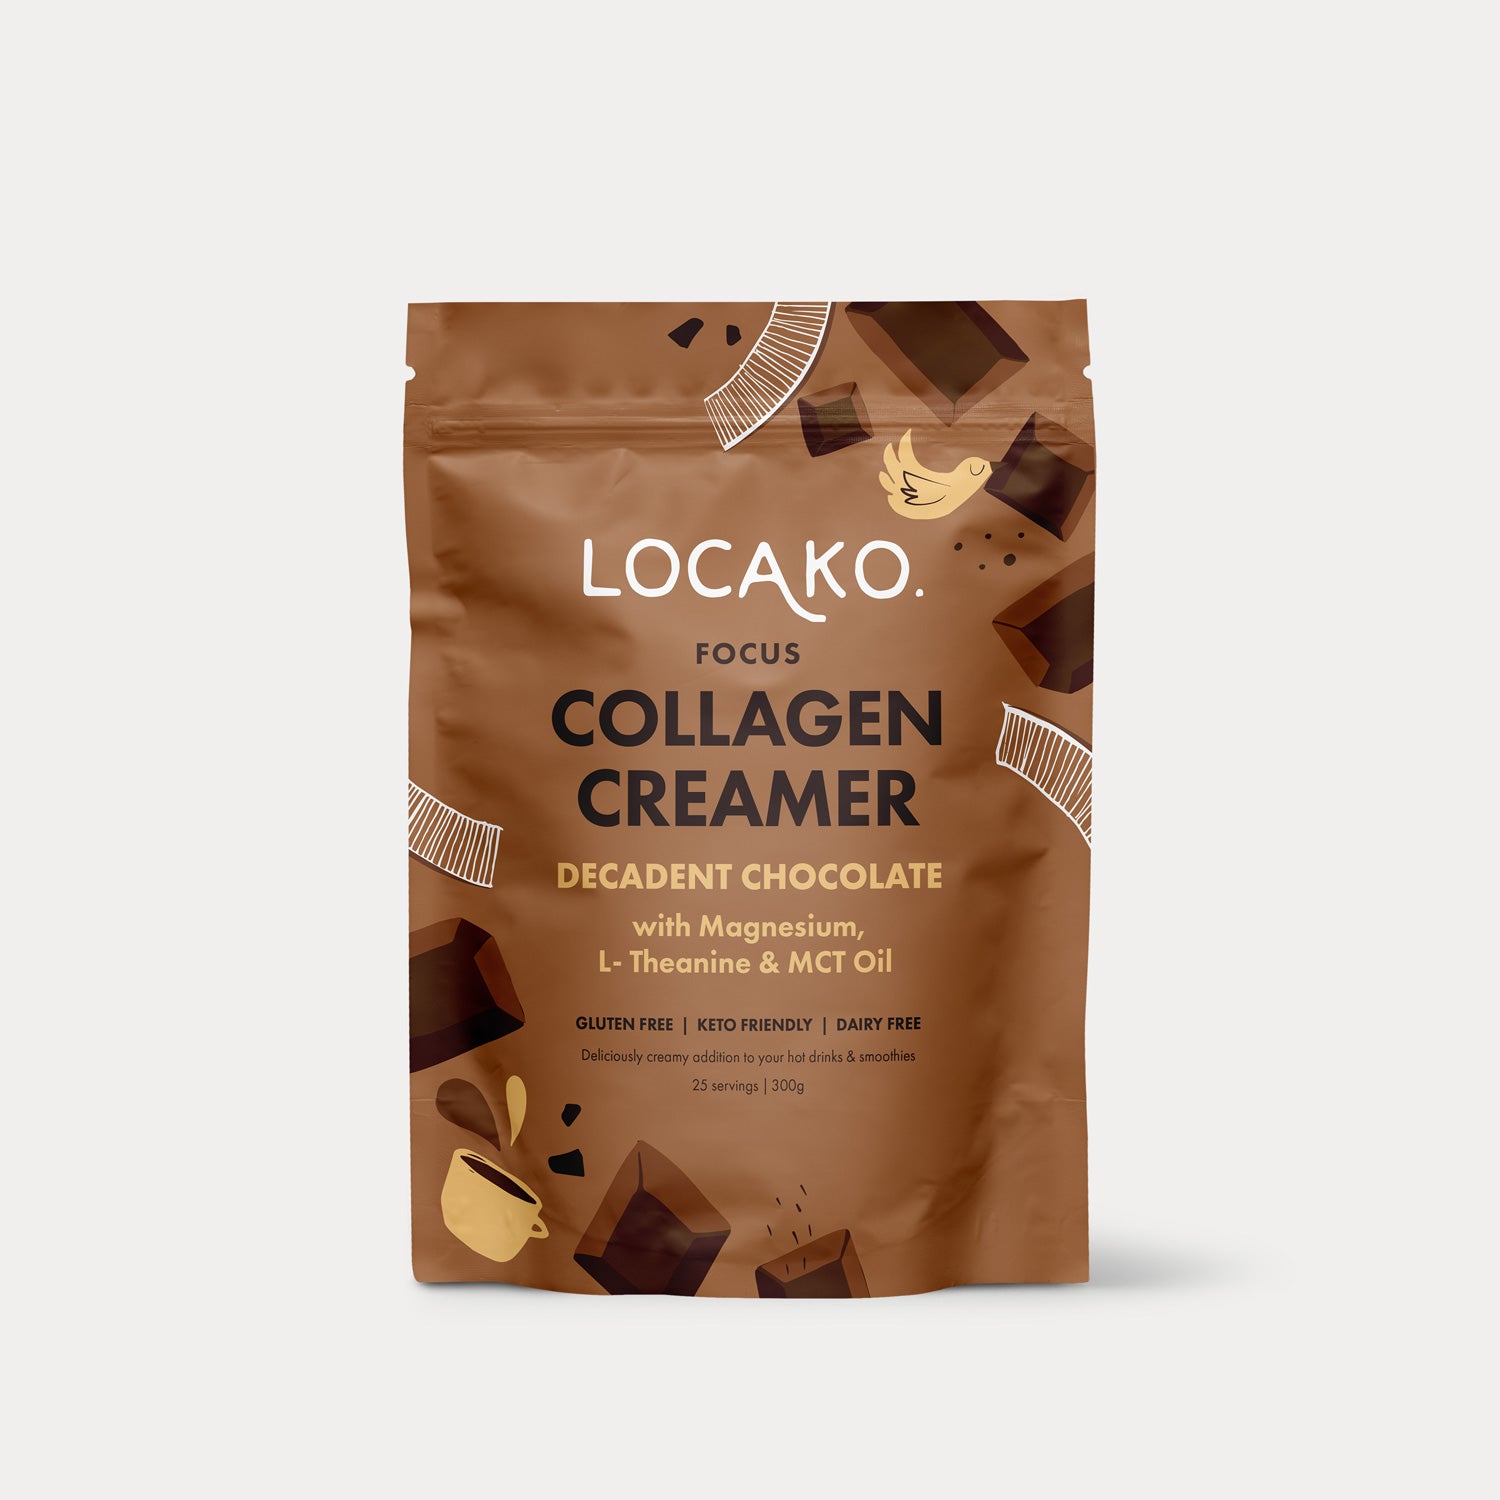 Collagen Creamer - Focus - Decadent Chocolate - Locako